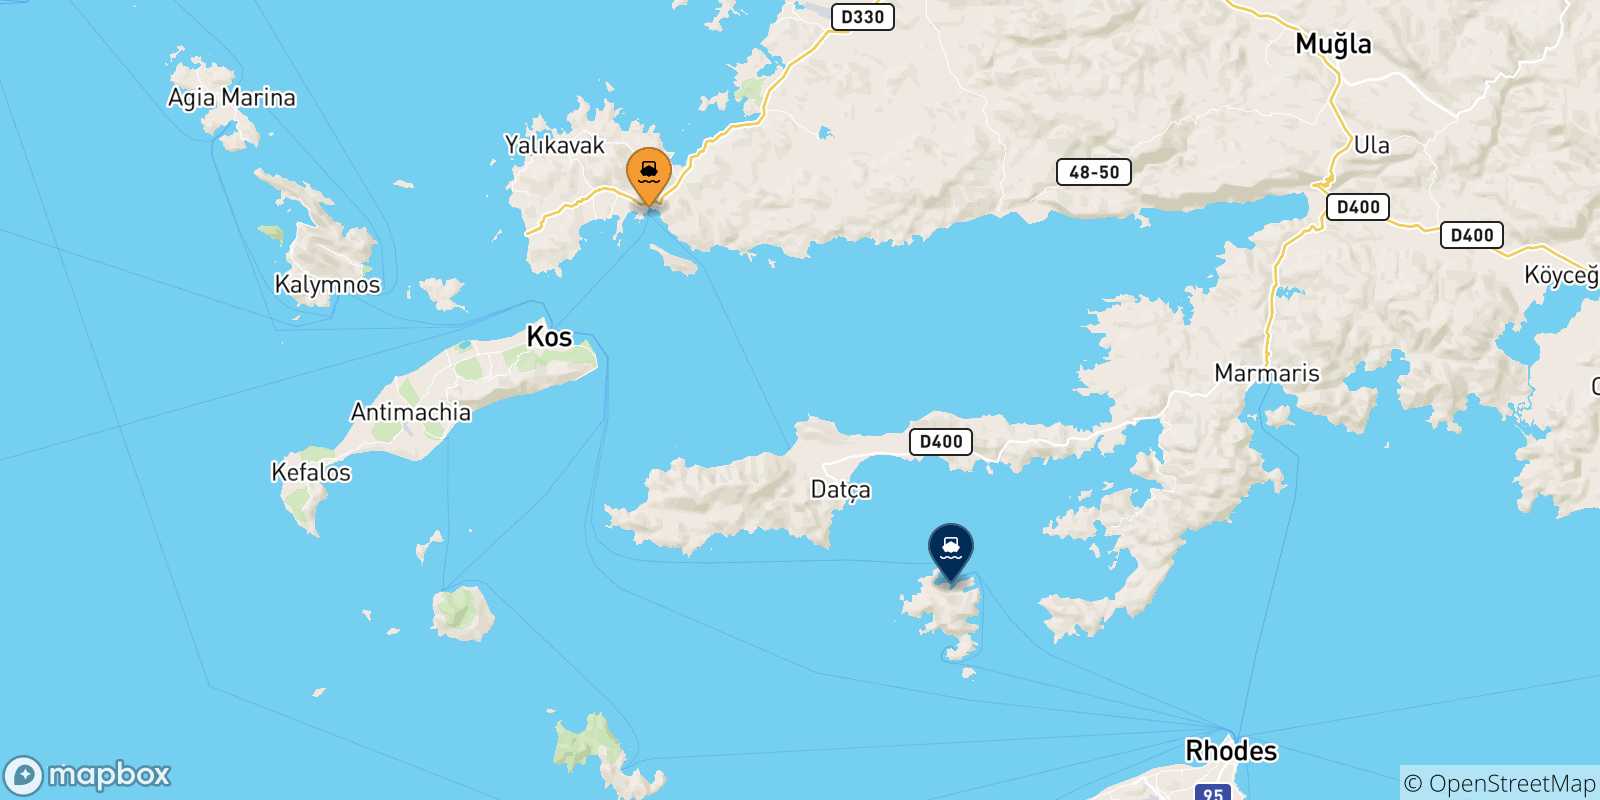 Mappa delle possibili rotte tra la Turchia e Symi